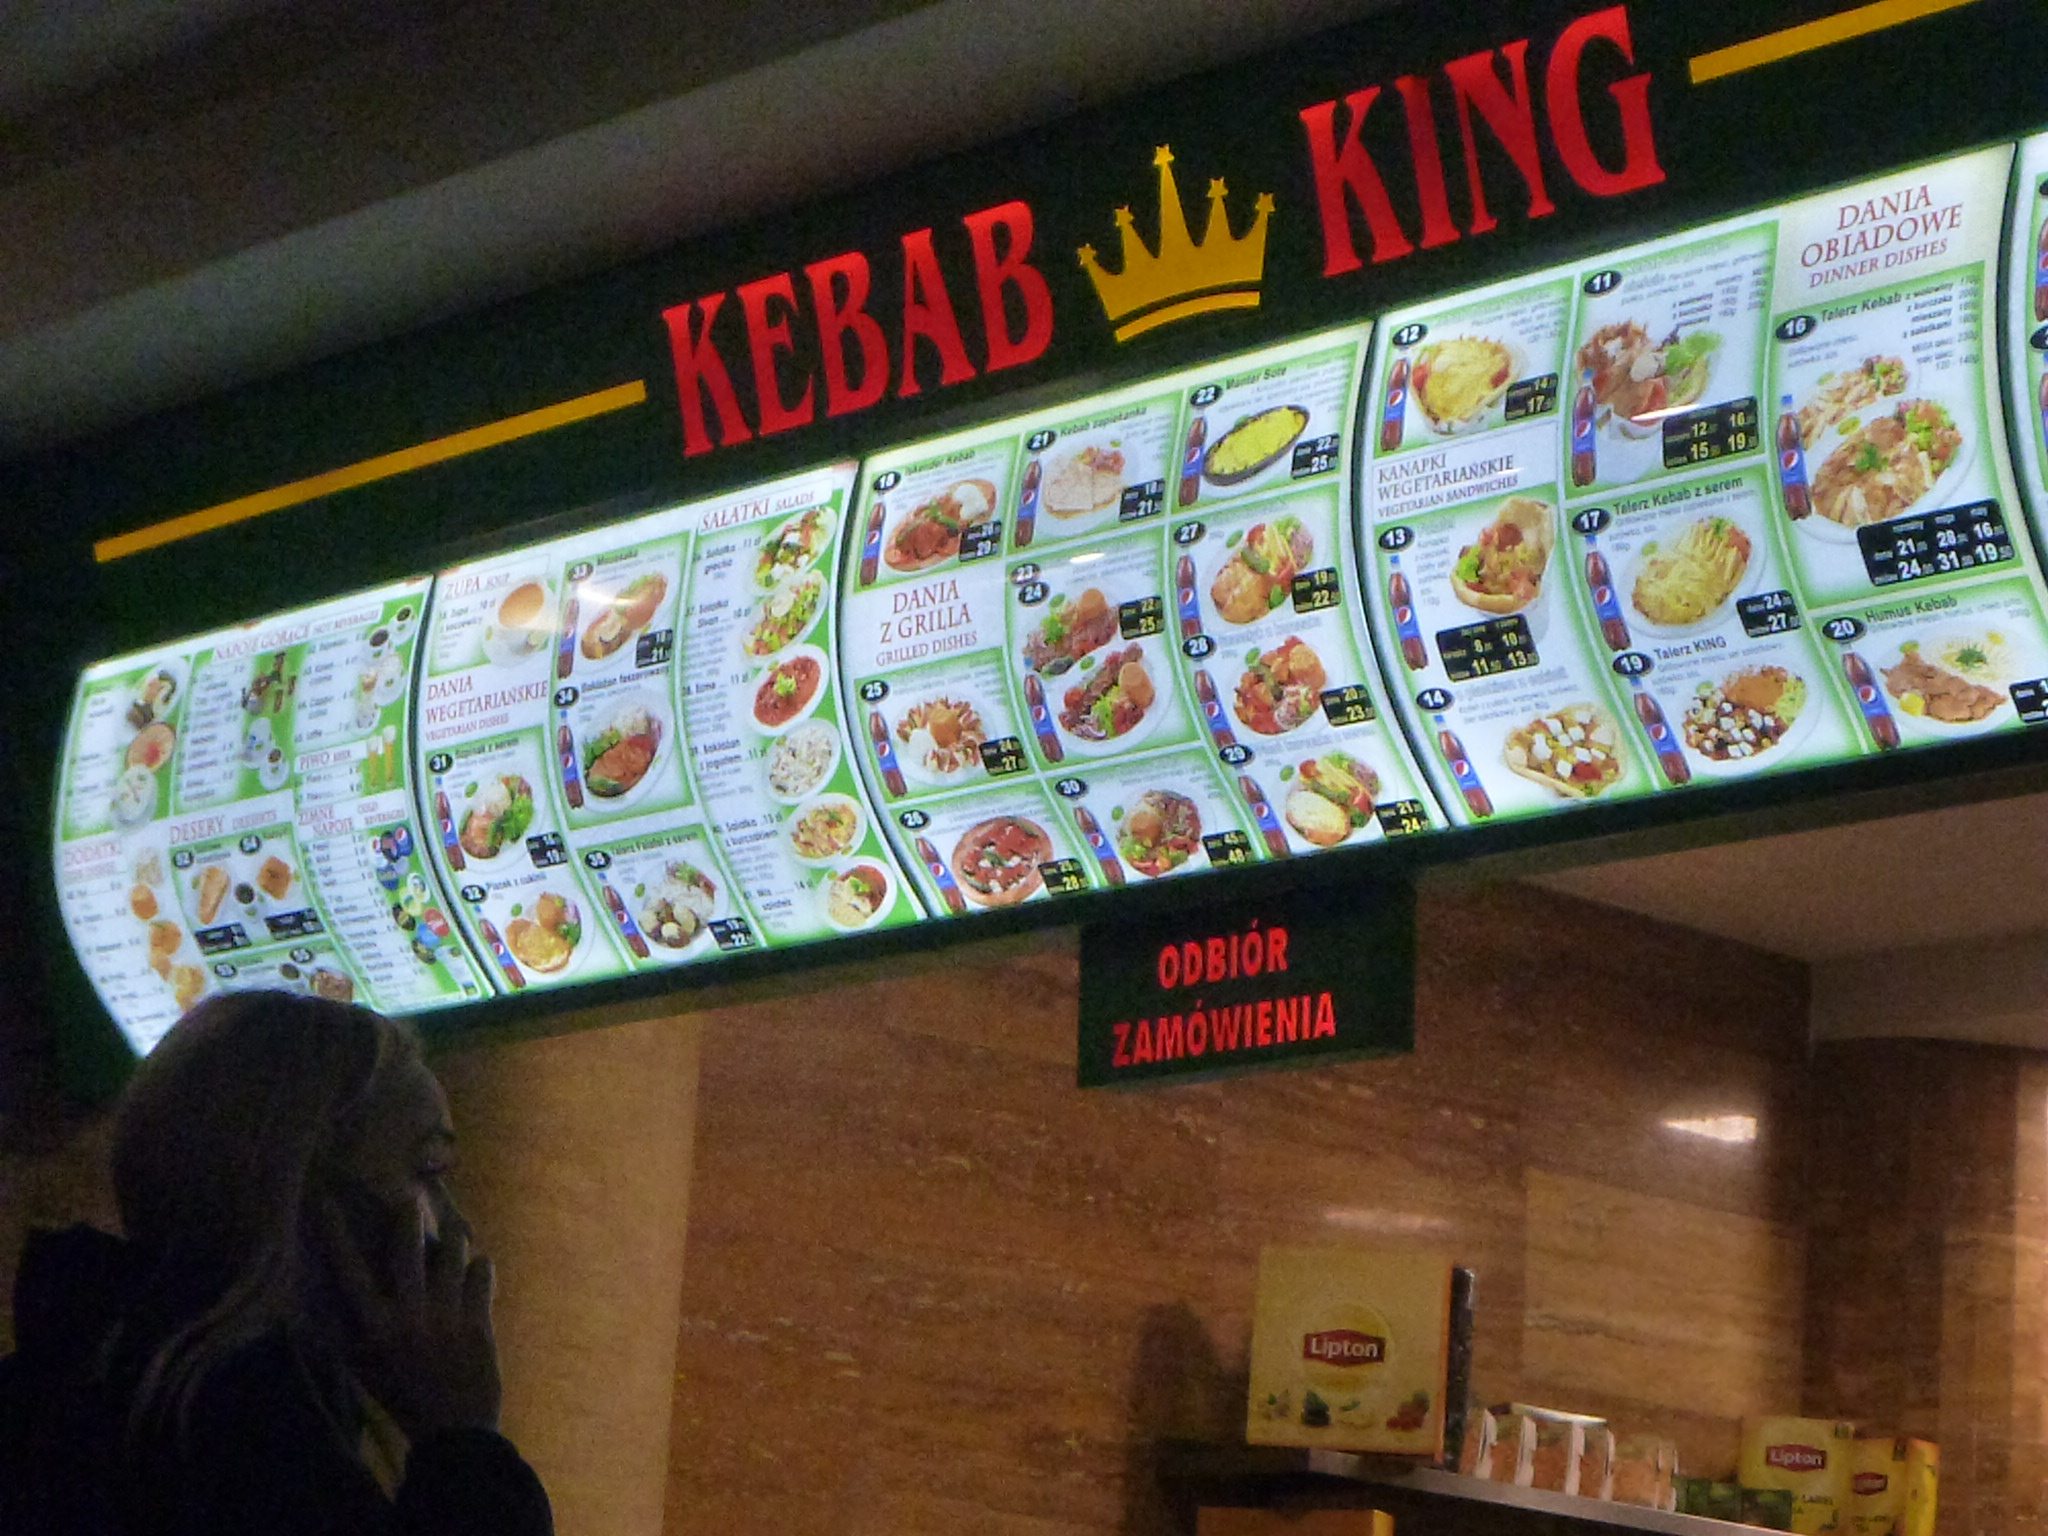 kebab king menu